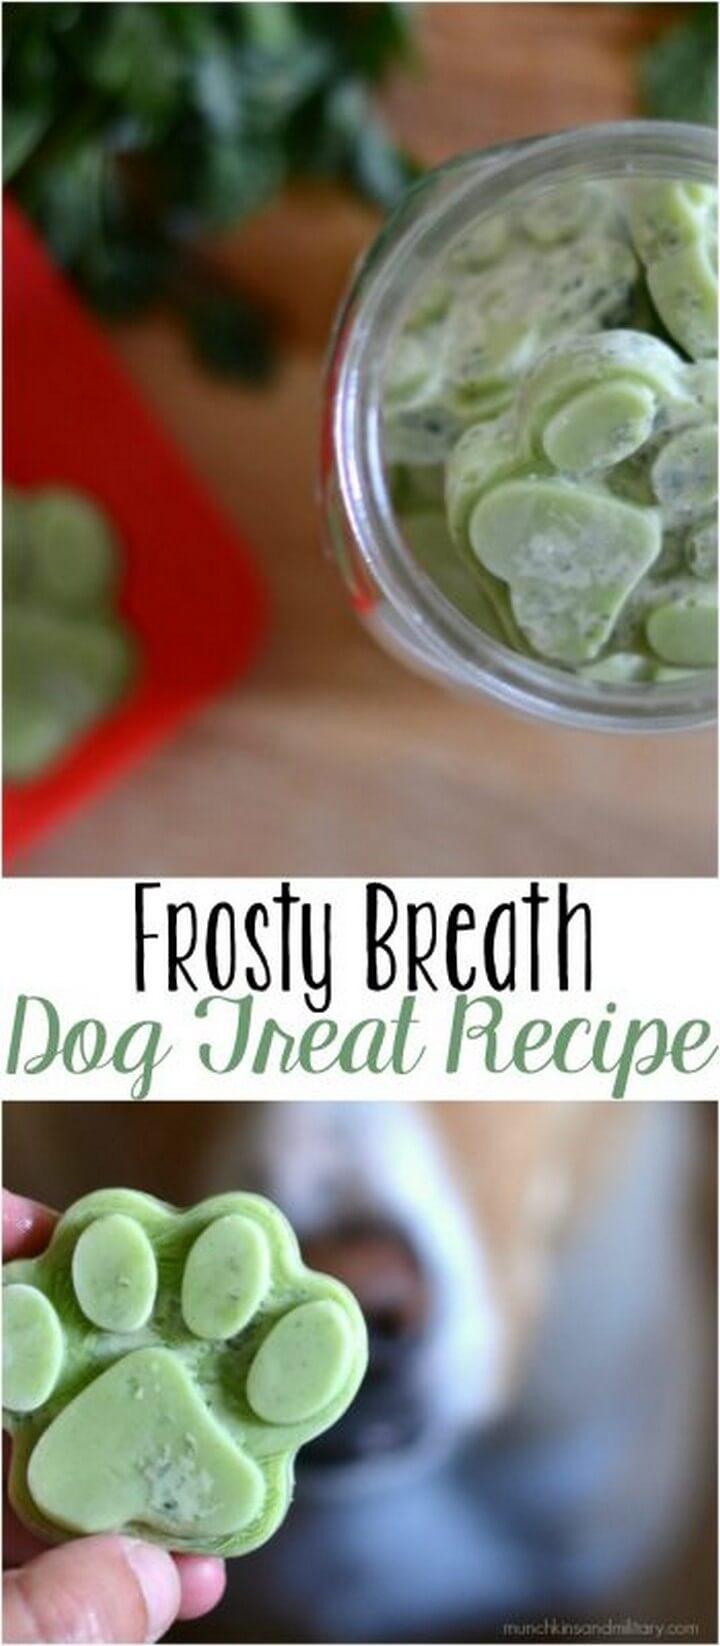 Frosty Breath Homemade Dog Treat Recipe